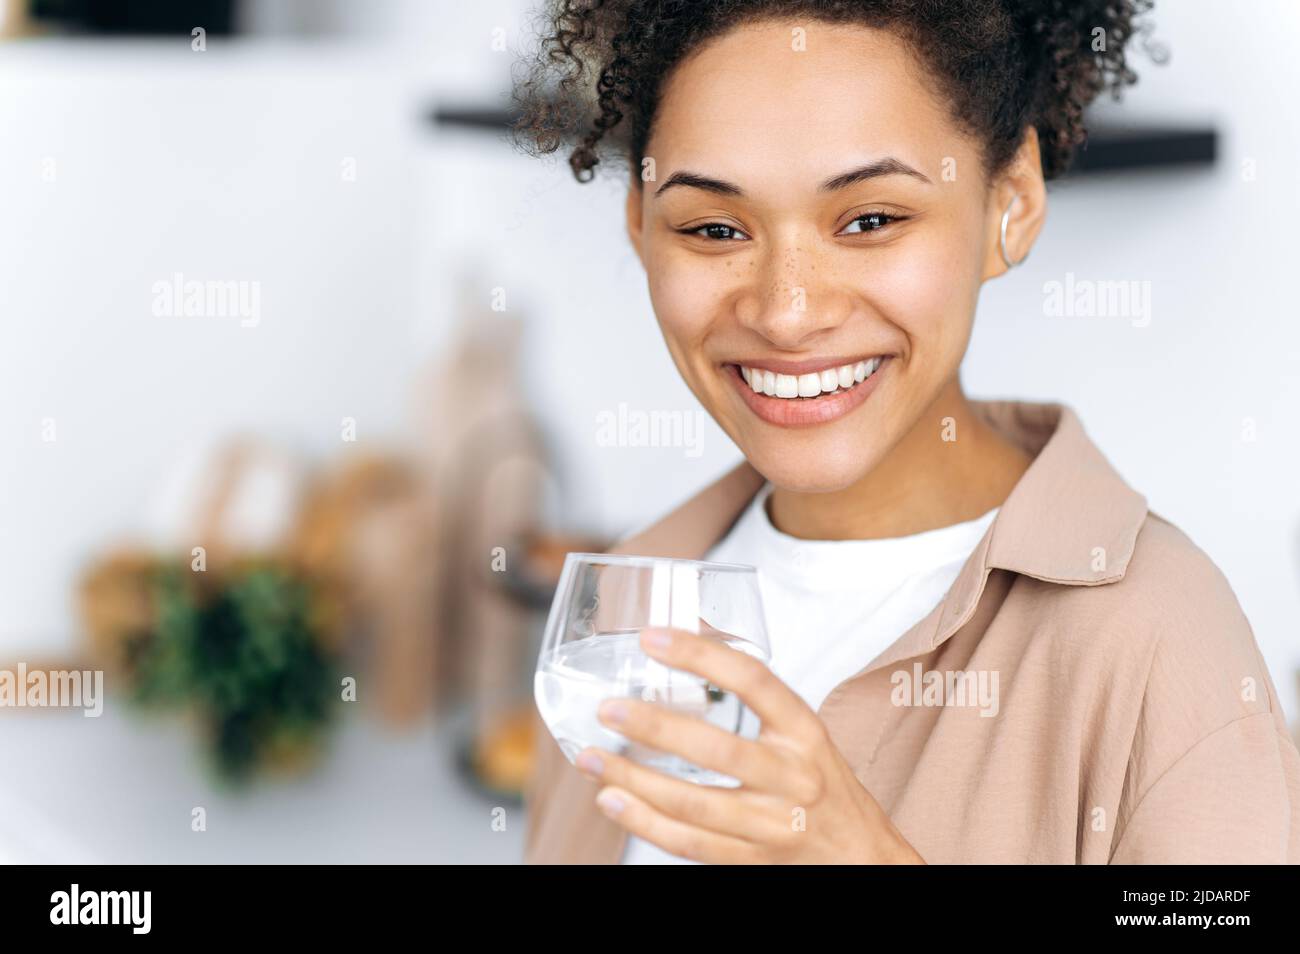 Foto de primer plano de una niña afroamericana de pelo rizado sana y positiva sosteniendo un vaso de agua limpia, cuidar la salud, controlar la tasa diaria de agua corporal, mira la cámara con una sonrisa enlozoadora feliz Foto de stock